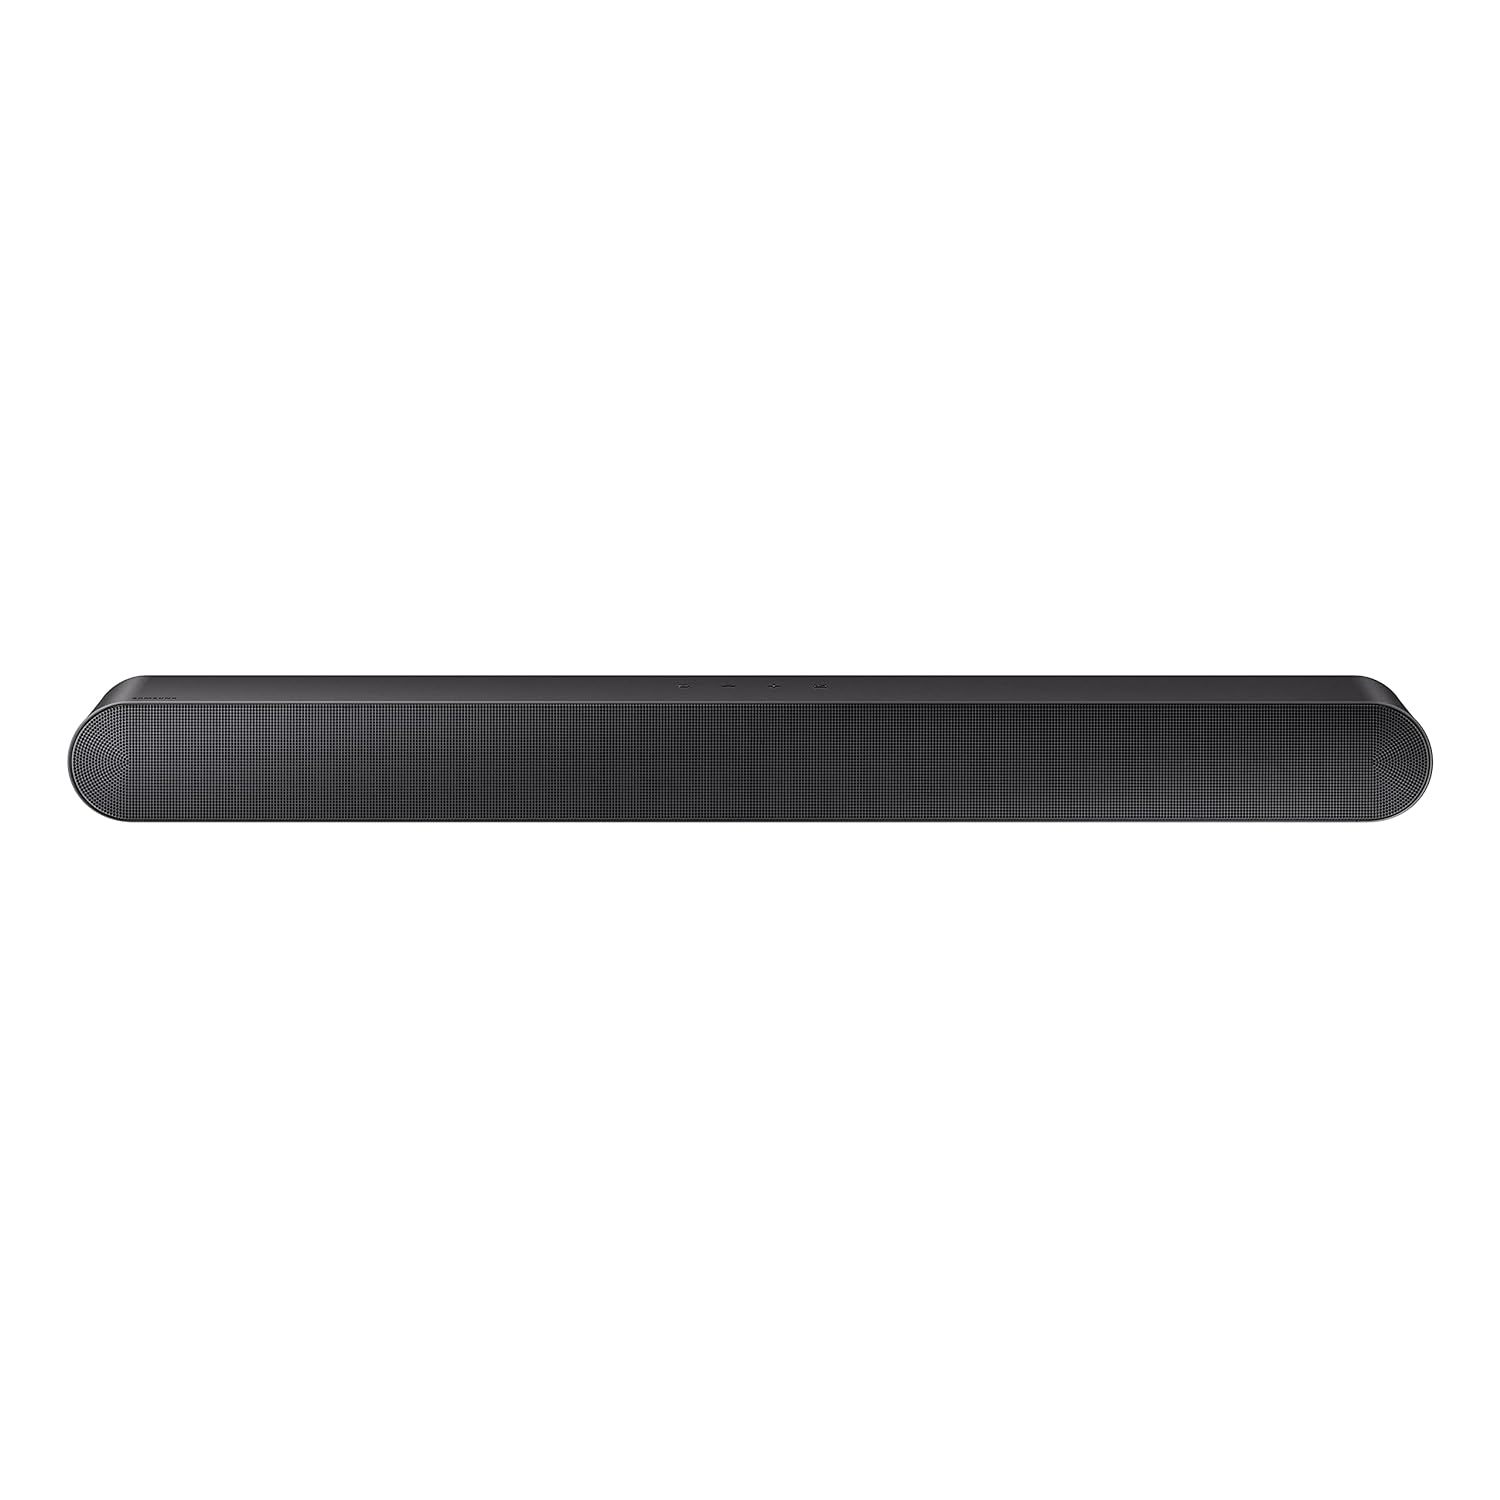 SAMSUNG HW-S50B/ZA 3.0ch All-in-One Soundbar w/Dolby 5.1, DTS Virtual:X, Q Symph - $311.99